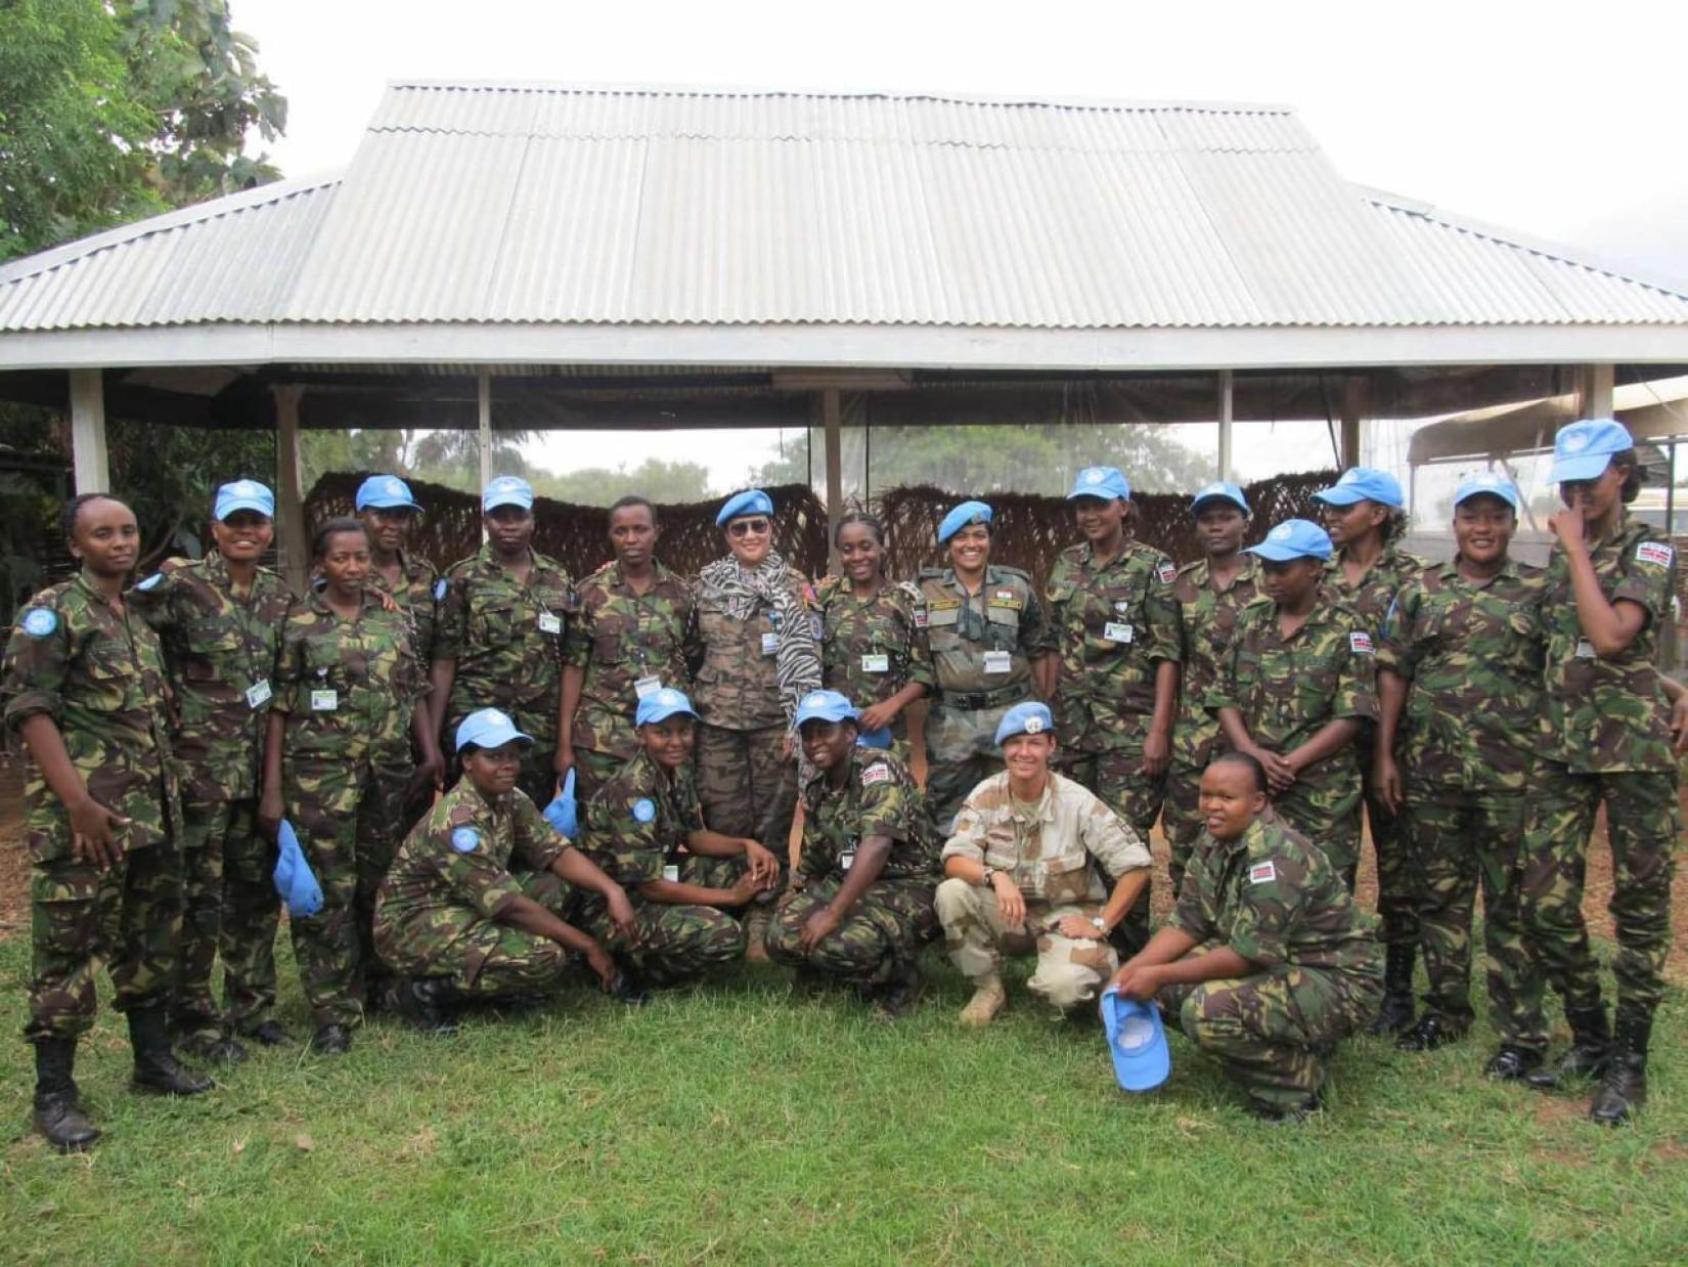 博洛尔·甘博德上校（中，戴墨镜）与其他联合国维和人员在基地。